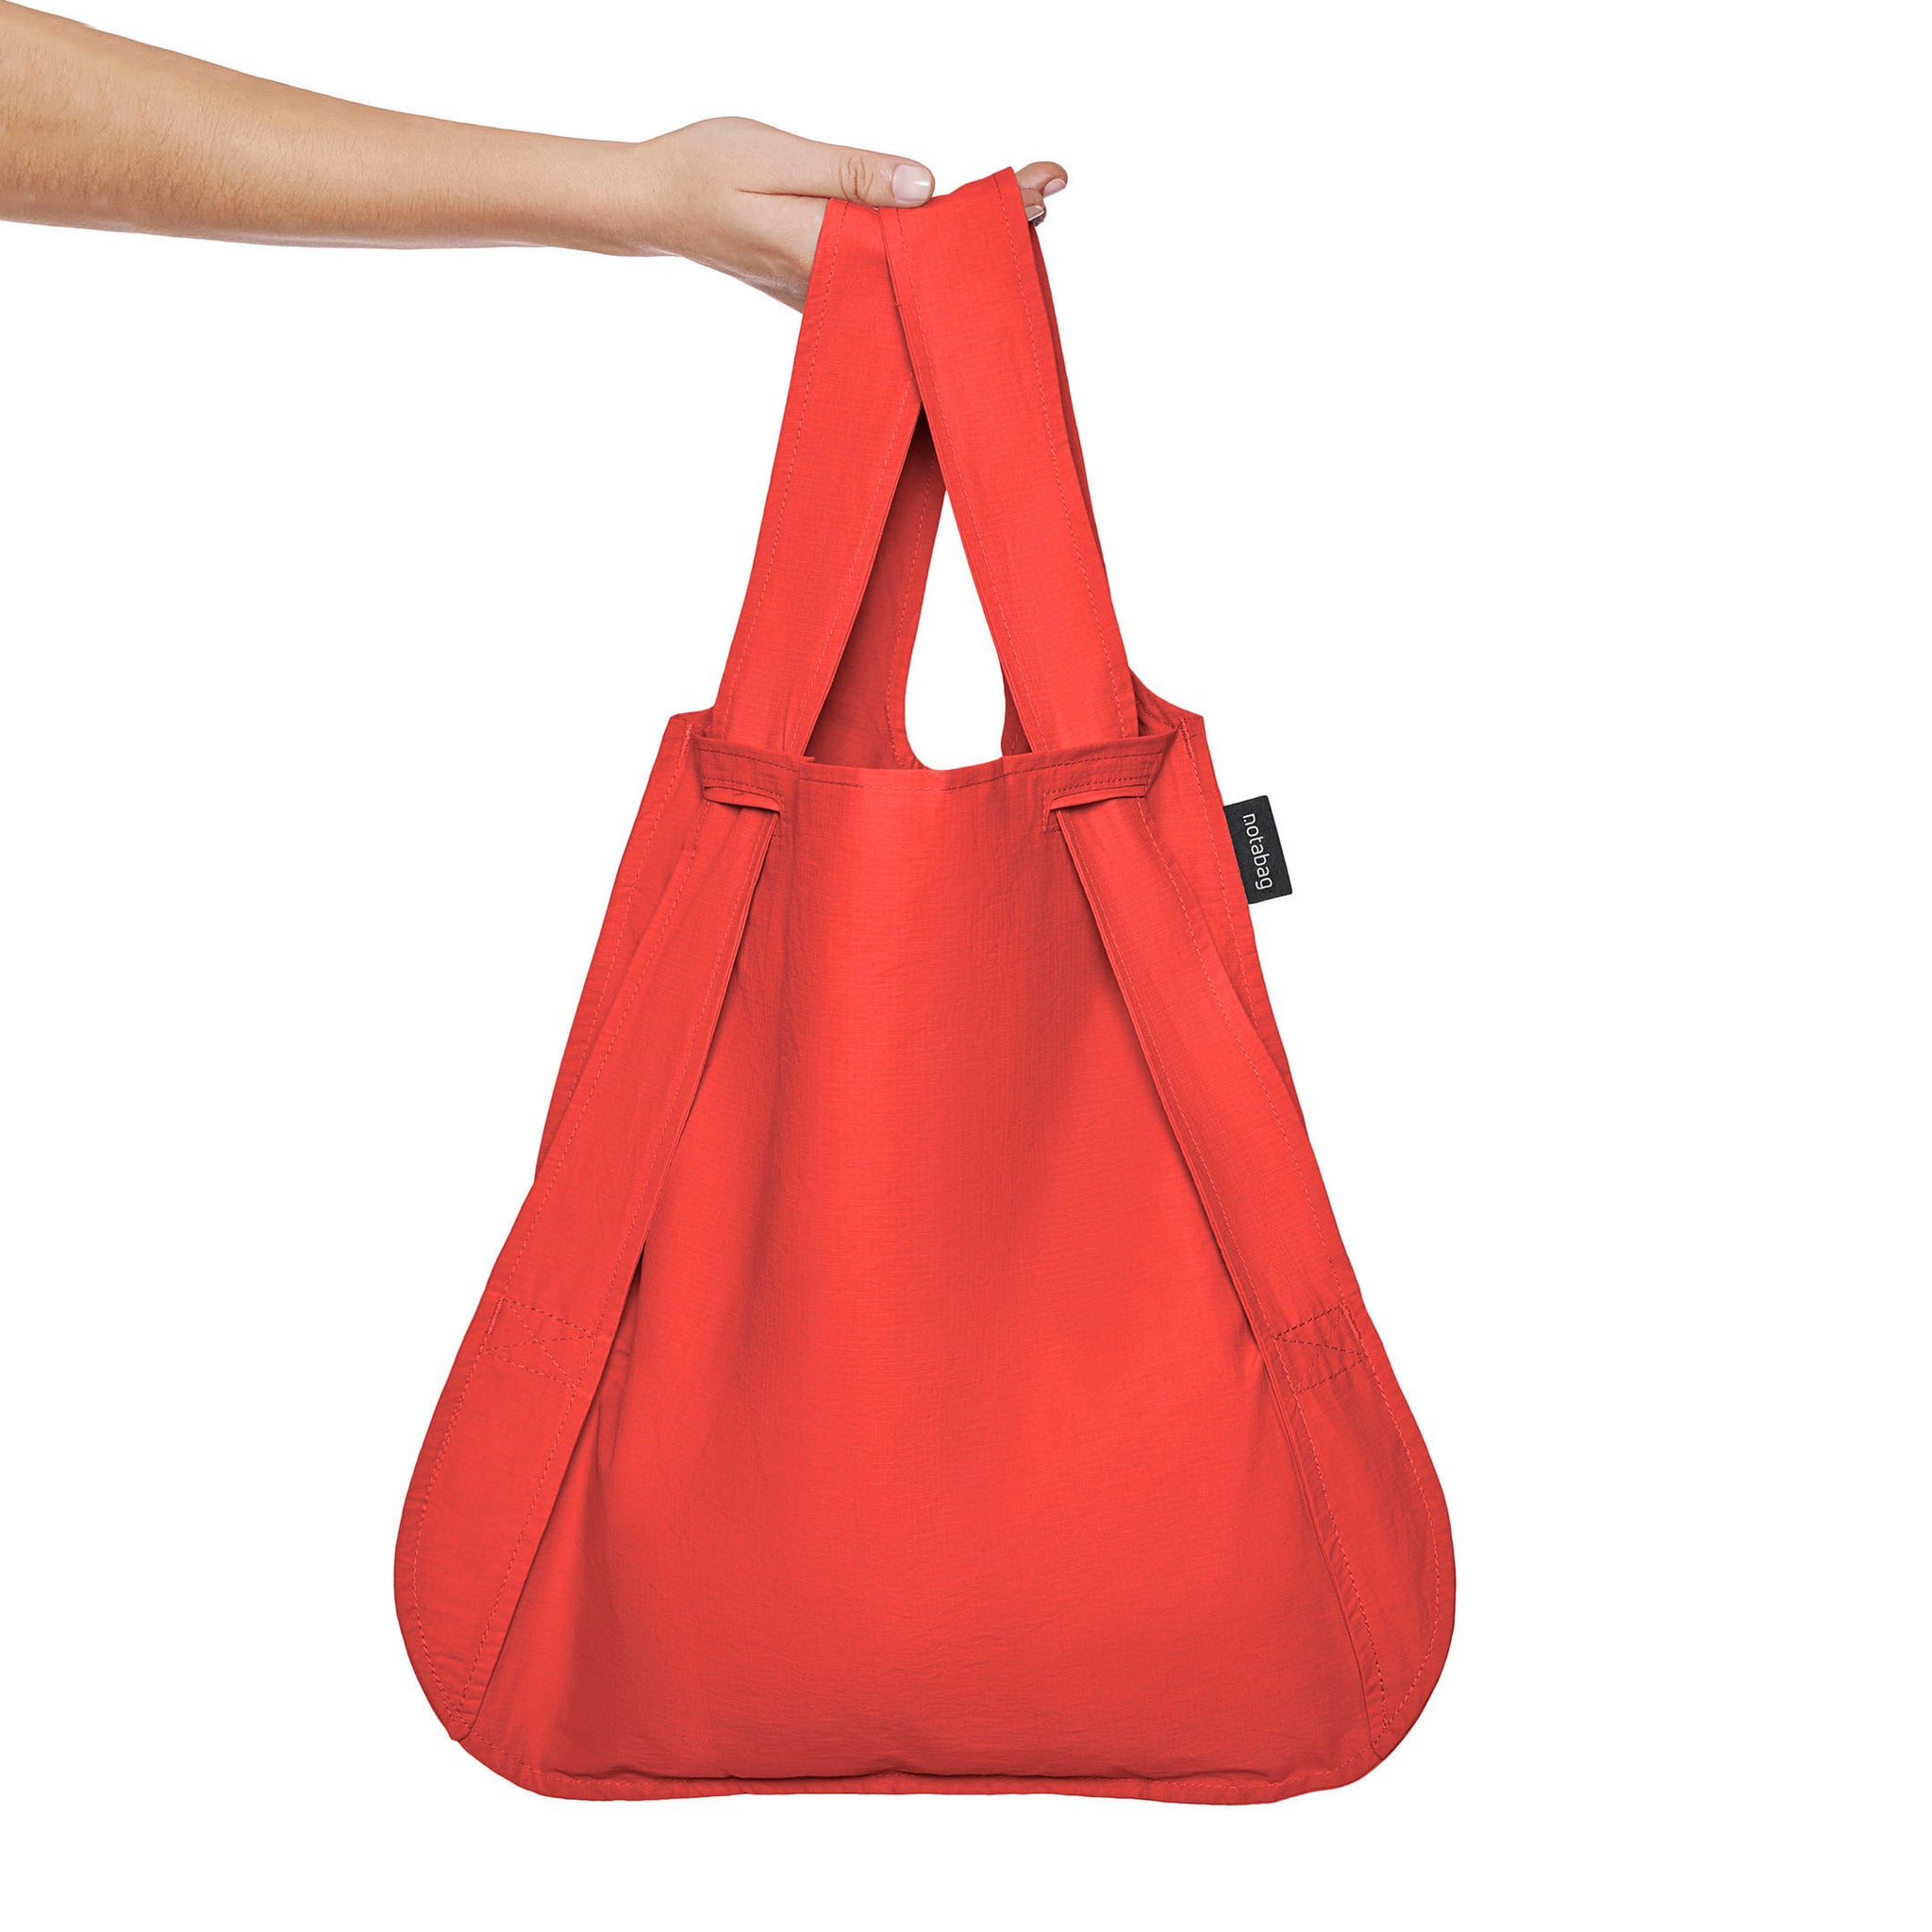 Notabag • Rugzak en tas in 1 • Notabag is de perfecte tas voor je dagelijkse gebruik! Een super handige combinatie tussen een tas en een rugzak. Door aan de draagbanden te trekken verandert hij van een shopper in een rugzak, en andersom. Altijd je handen vrij wanneer nodig!